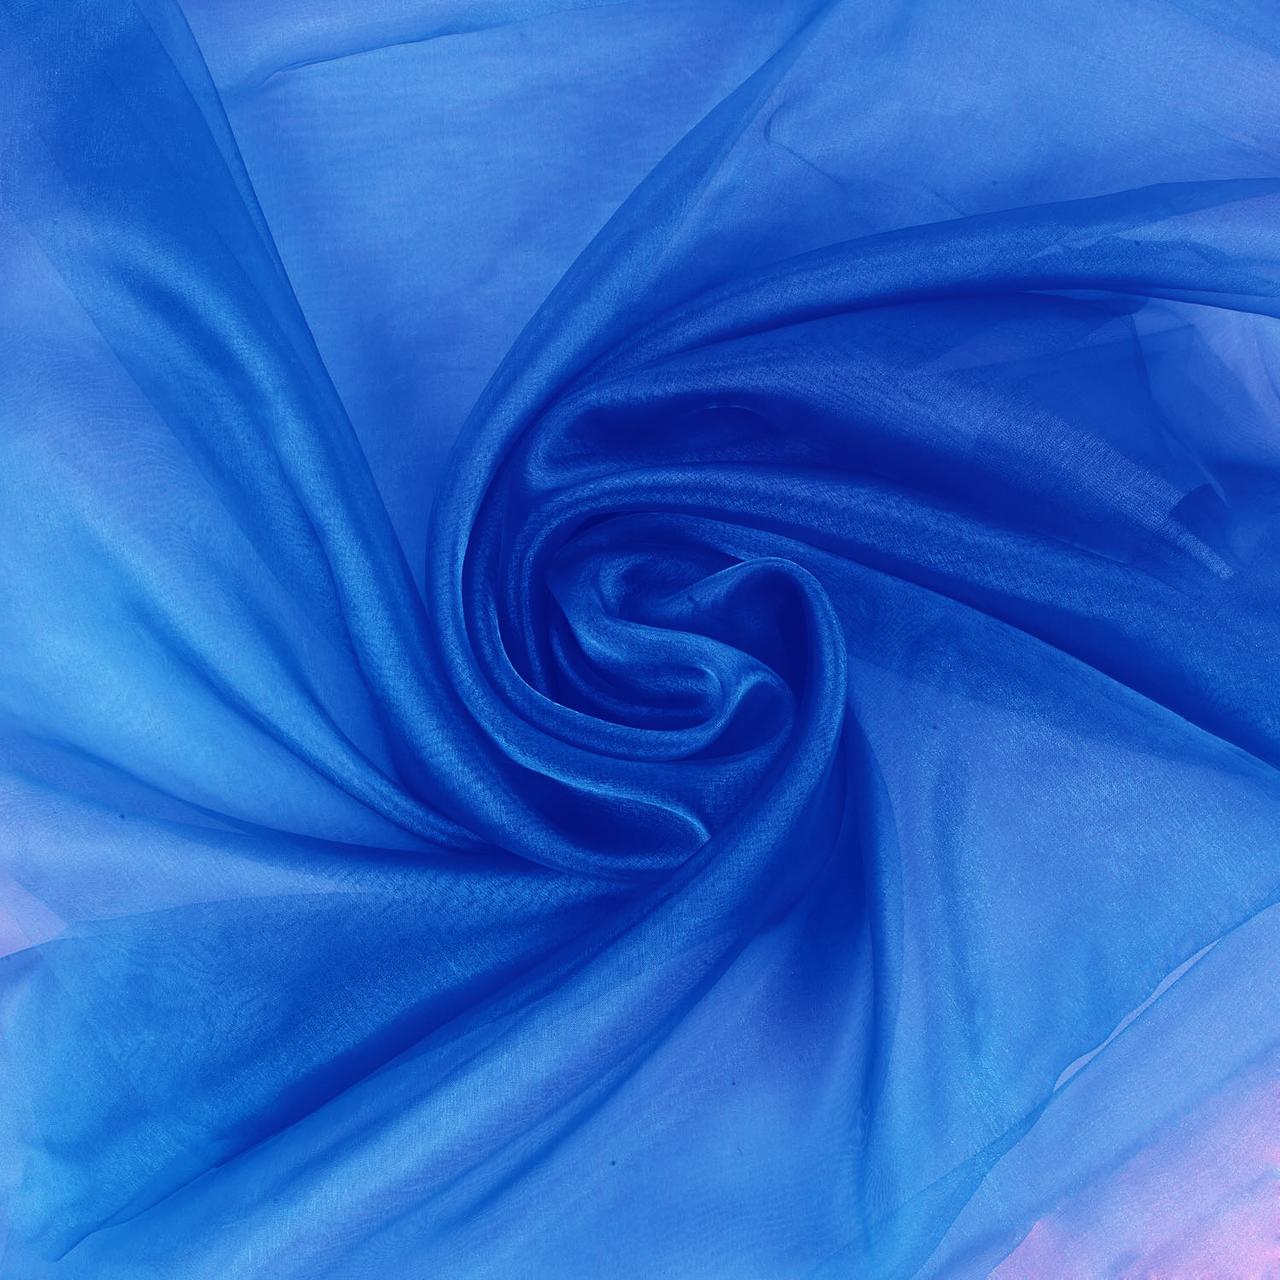 Blue Shimmer Fabric Roll - 1 Piece - Walmart.com